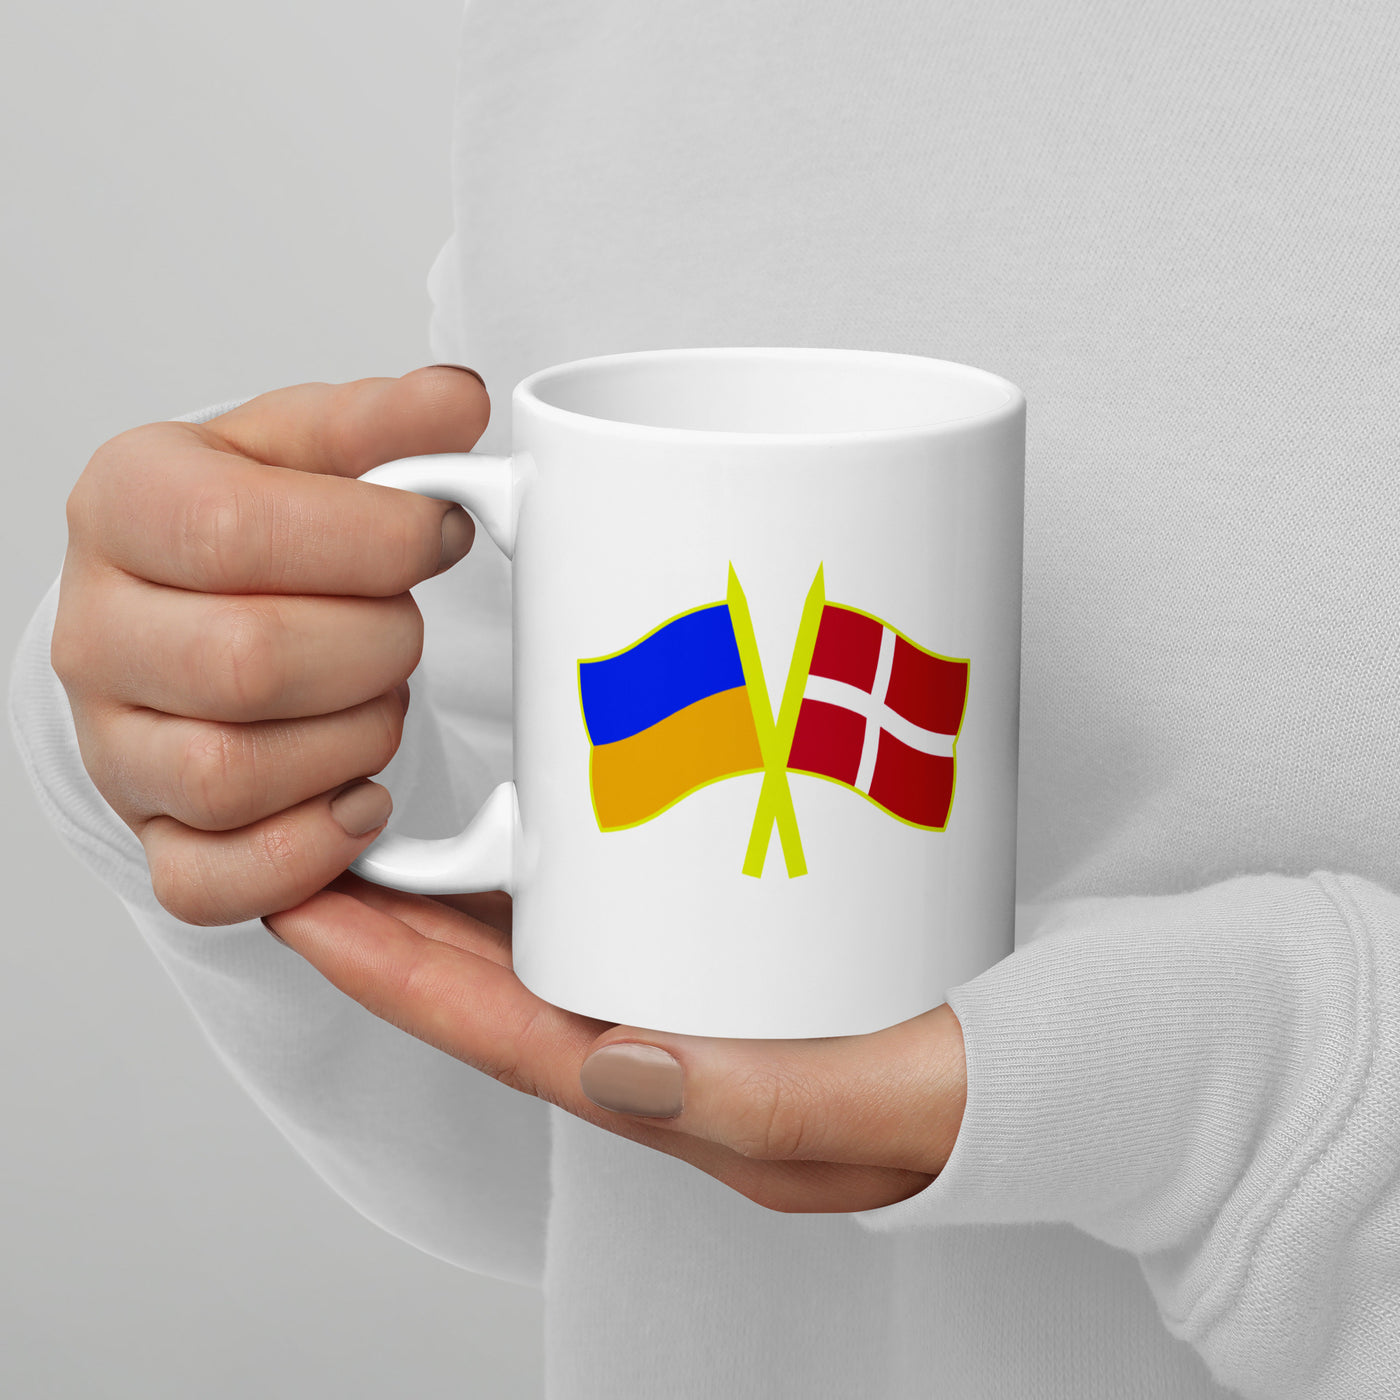 Denmark-Ukraine Mug